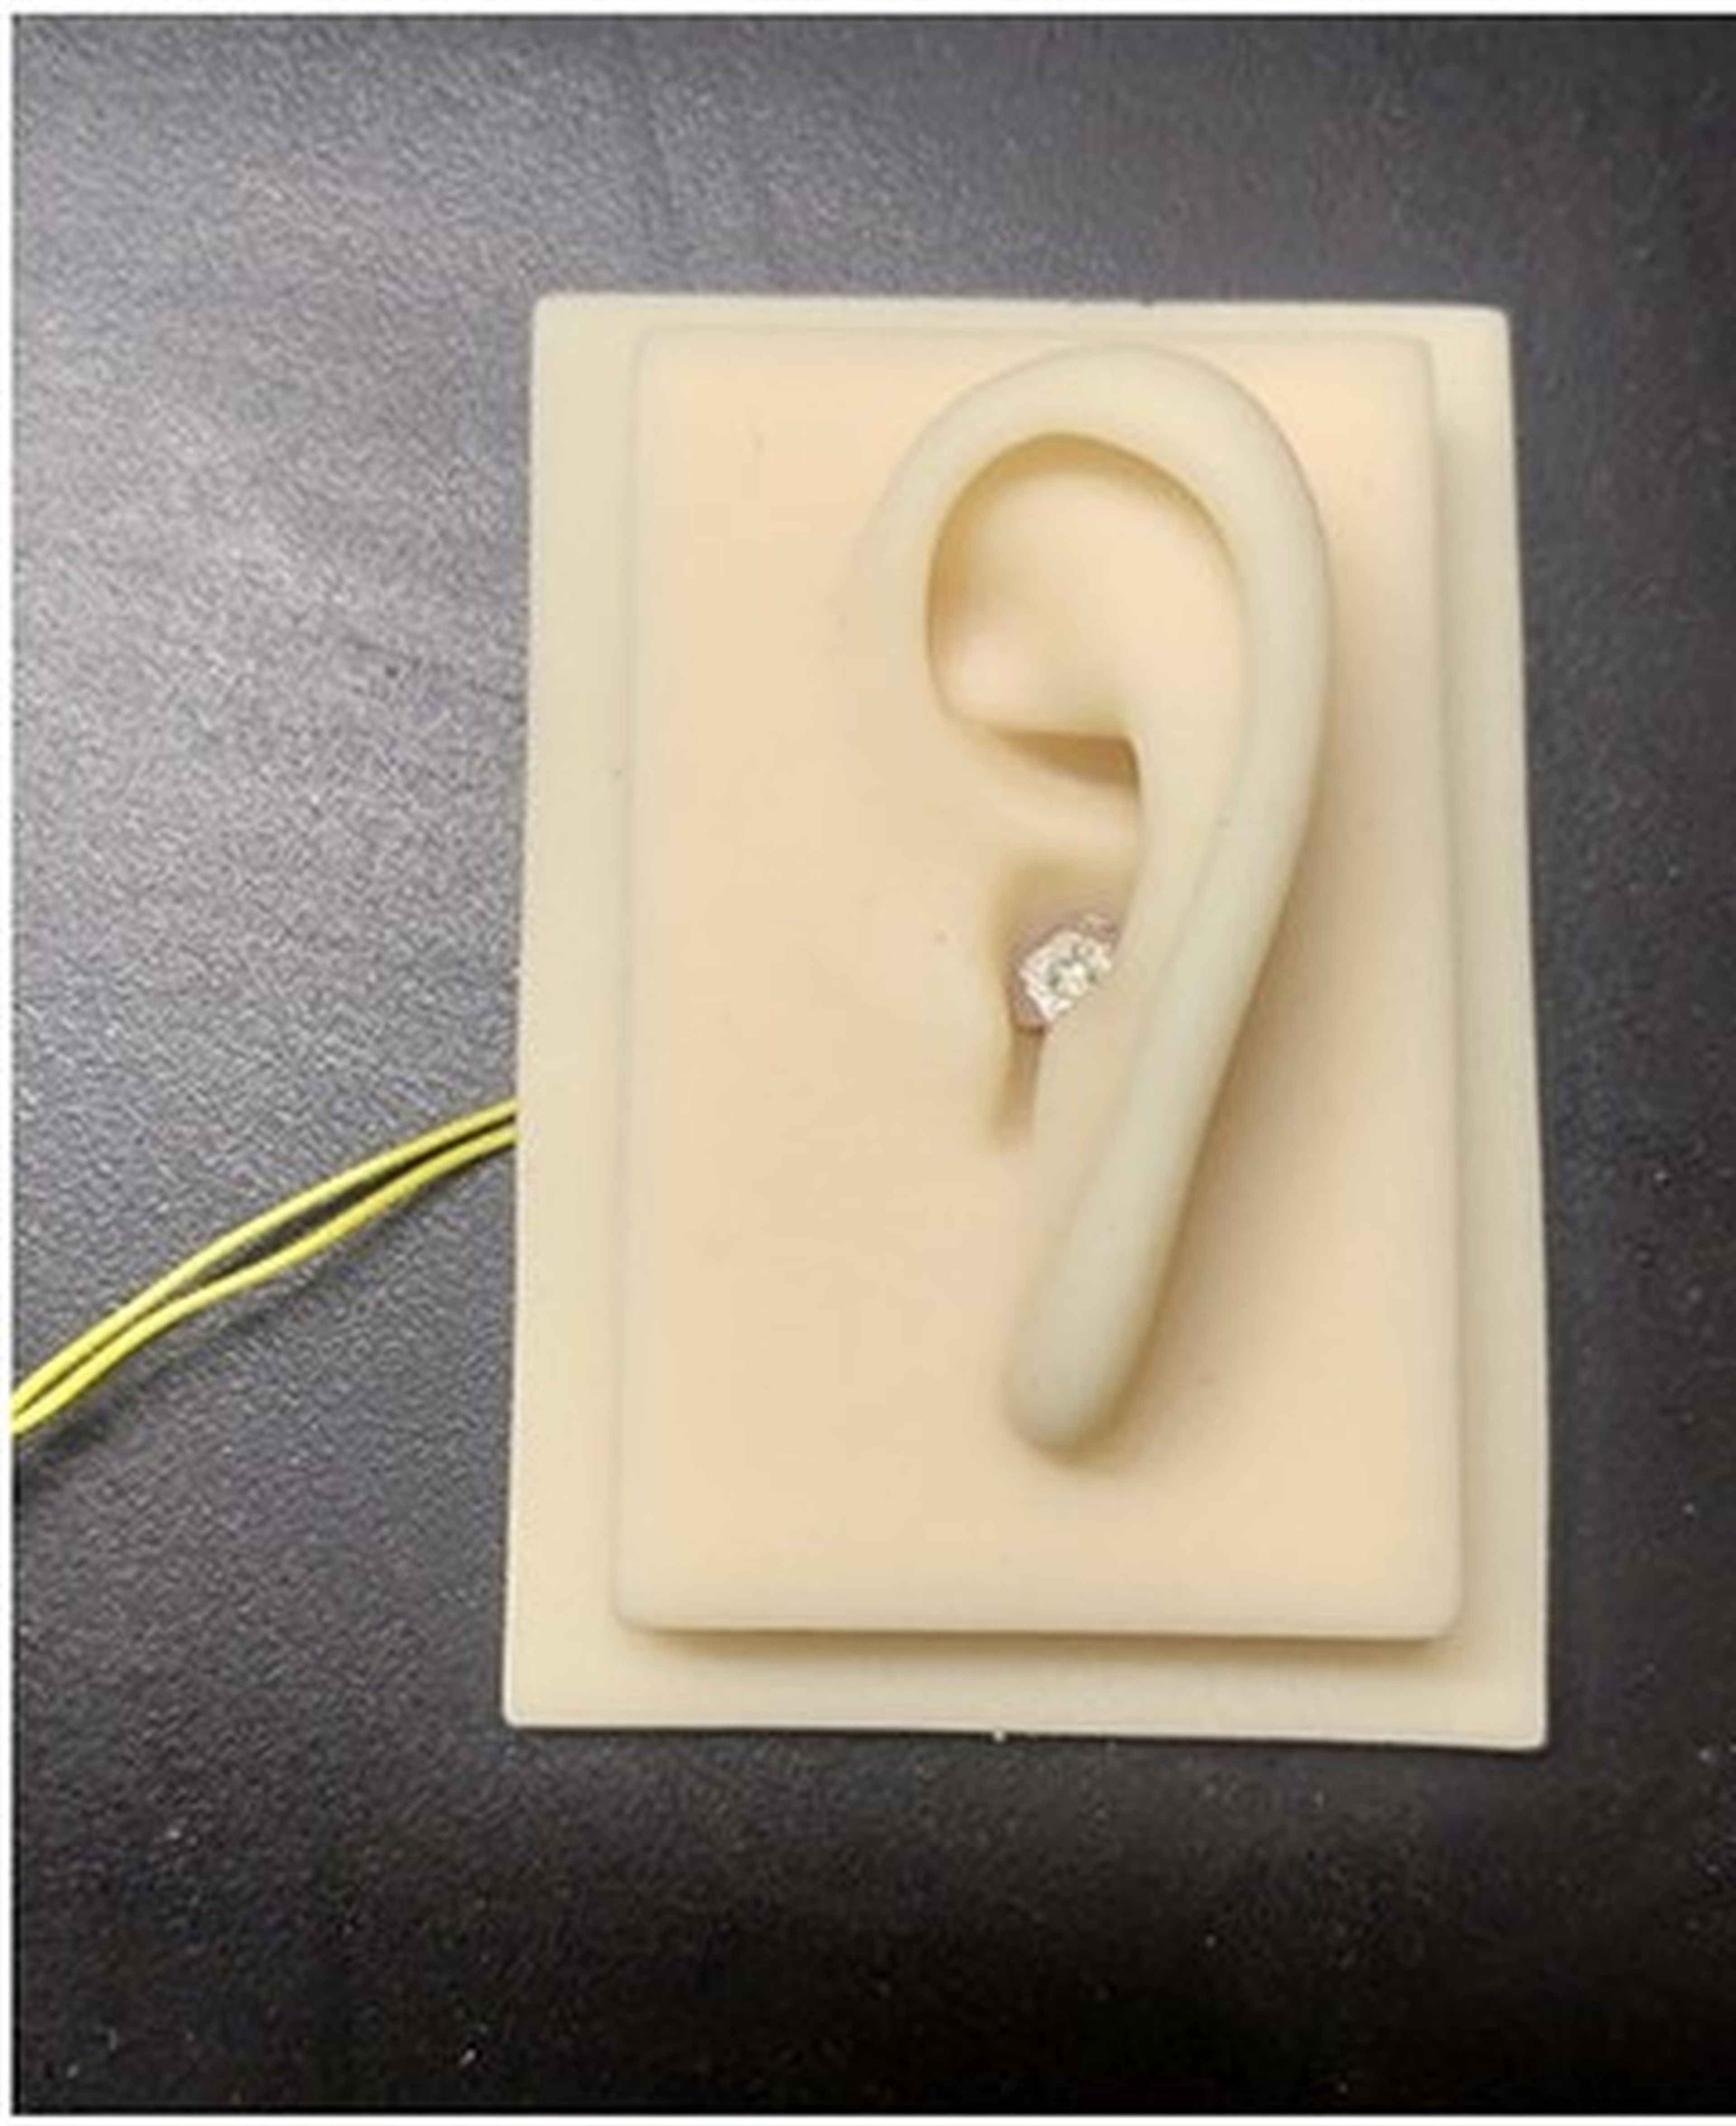 Prototipo de audífono sin pilas desarrollado en la Universidad de Ciencia y Tecnología de Huazhong de China.